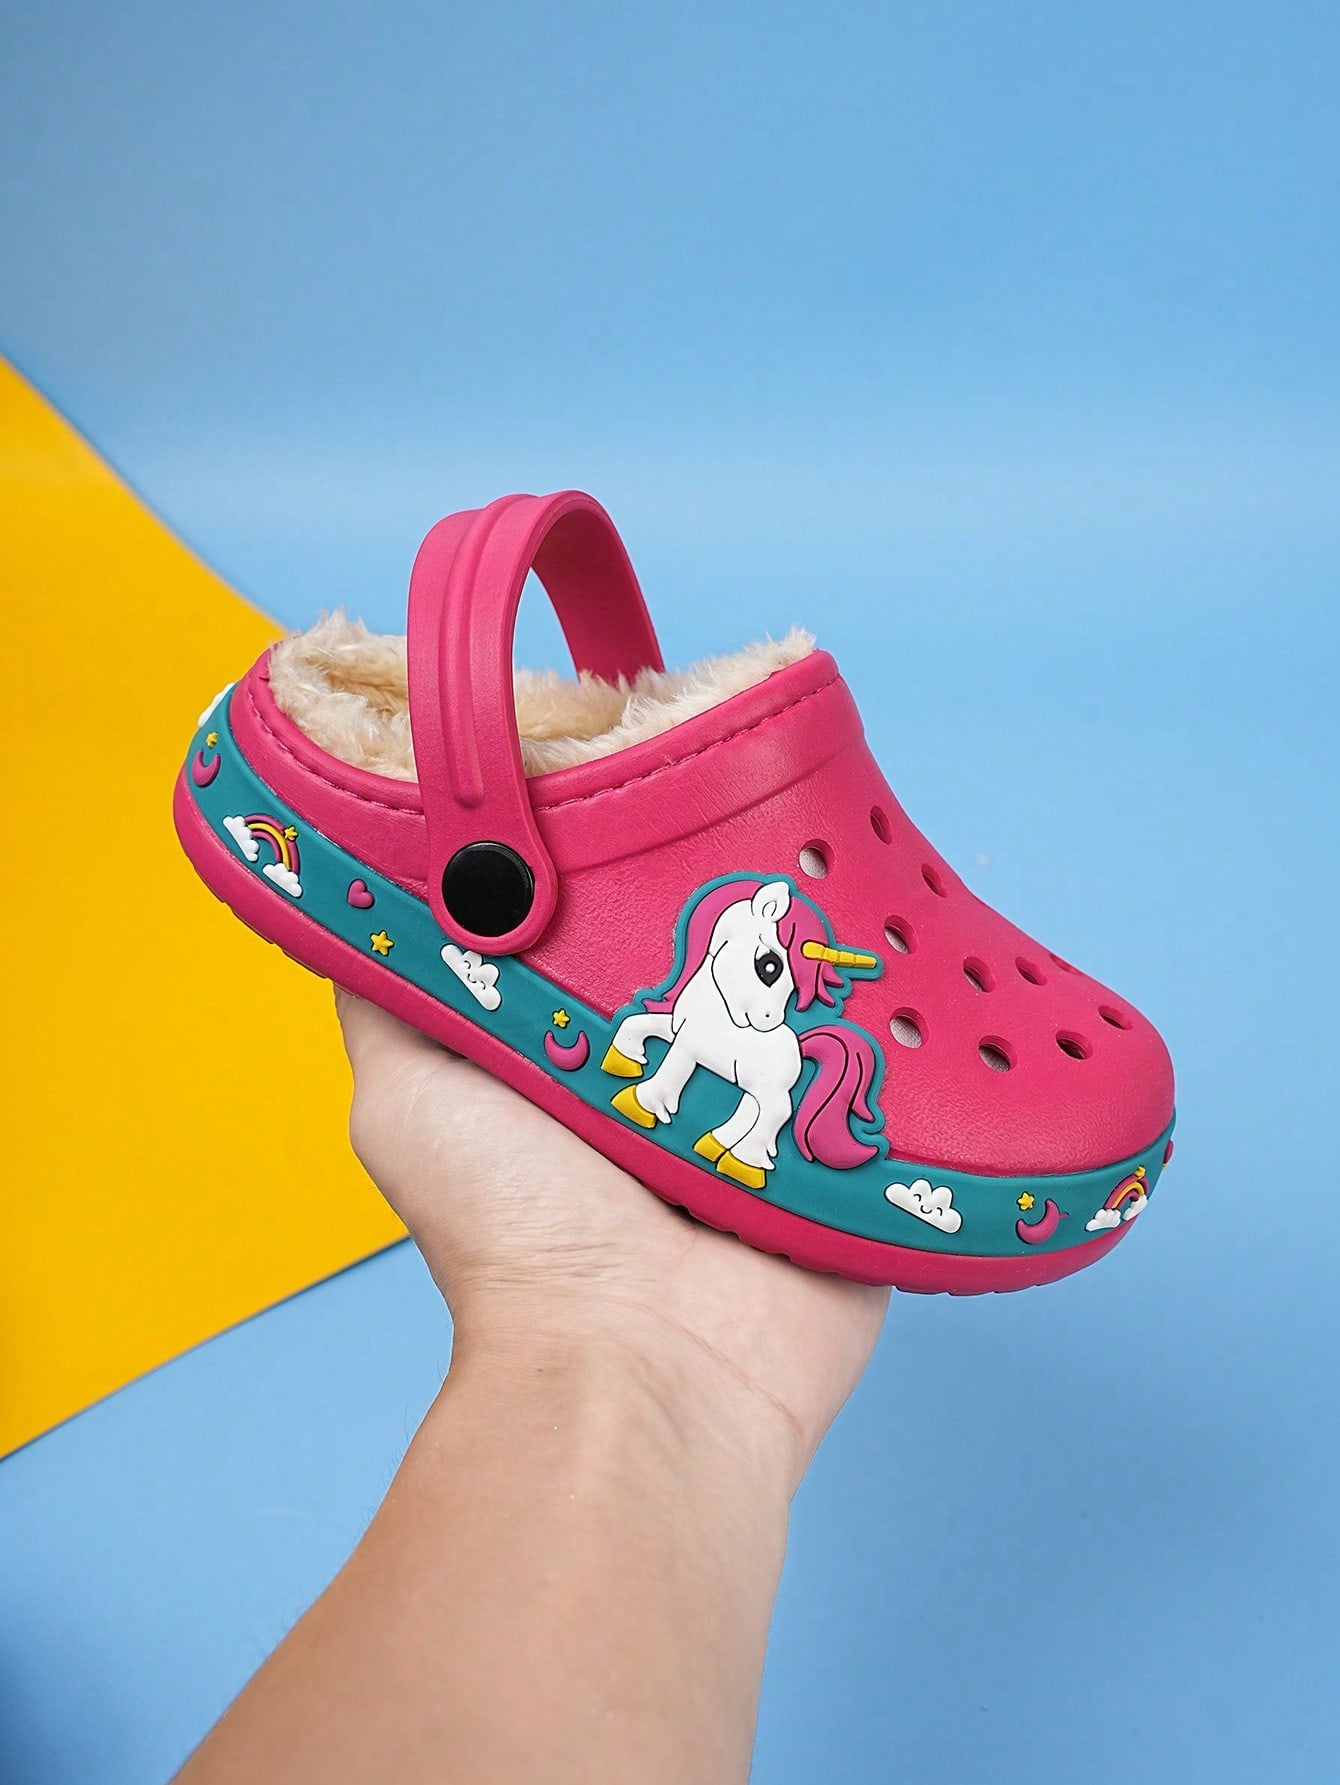 Little Girls Toddler Hot Pink Unicorn Themed Cartoon Garden Casual Clog Shoes KIDS SZ 7.5-12.5 🔥